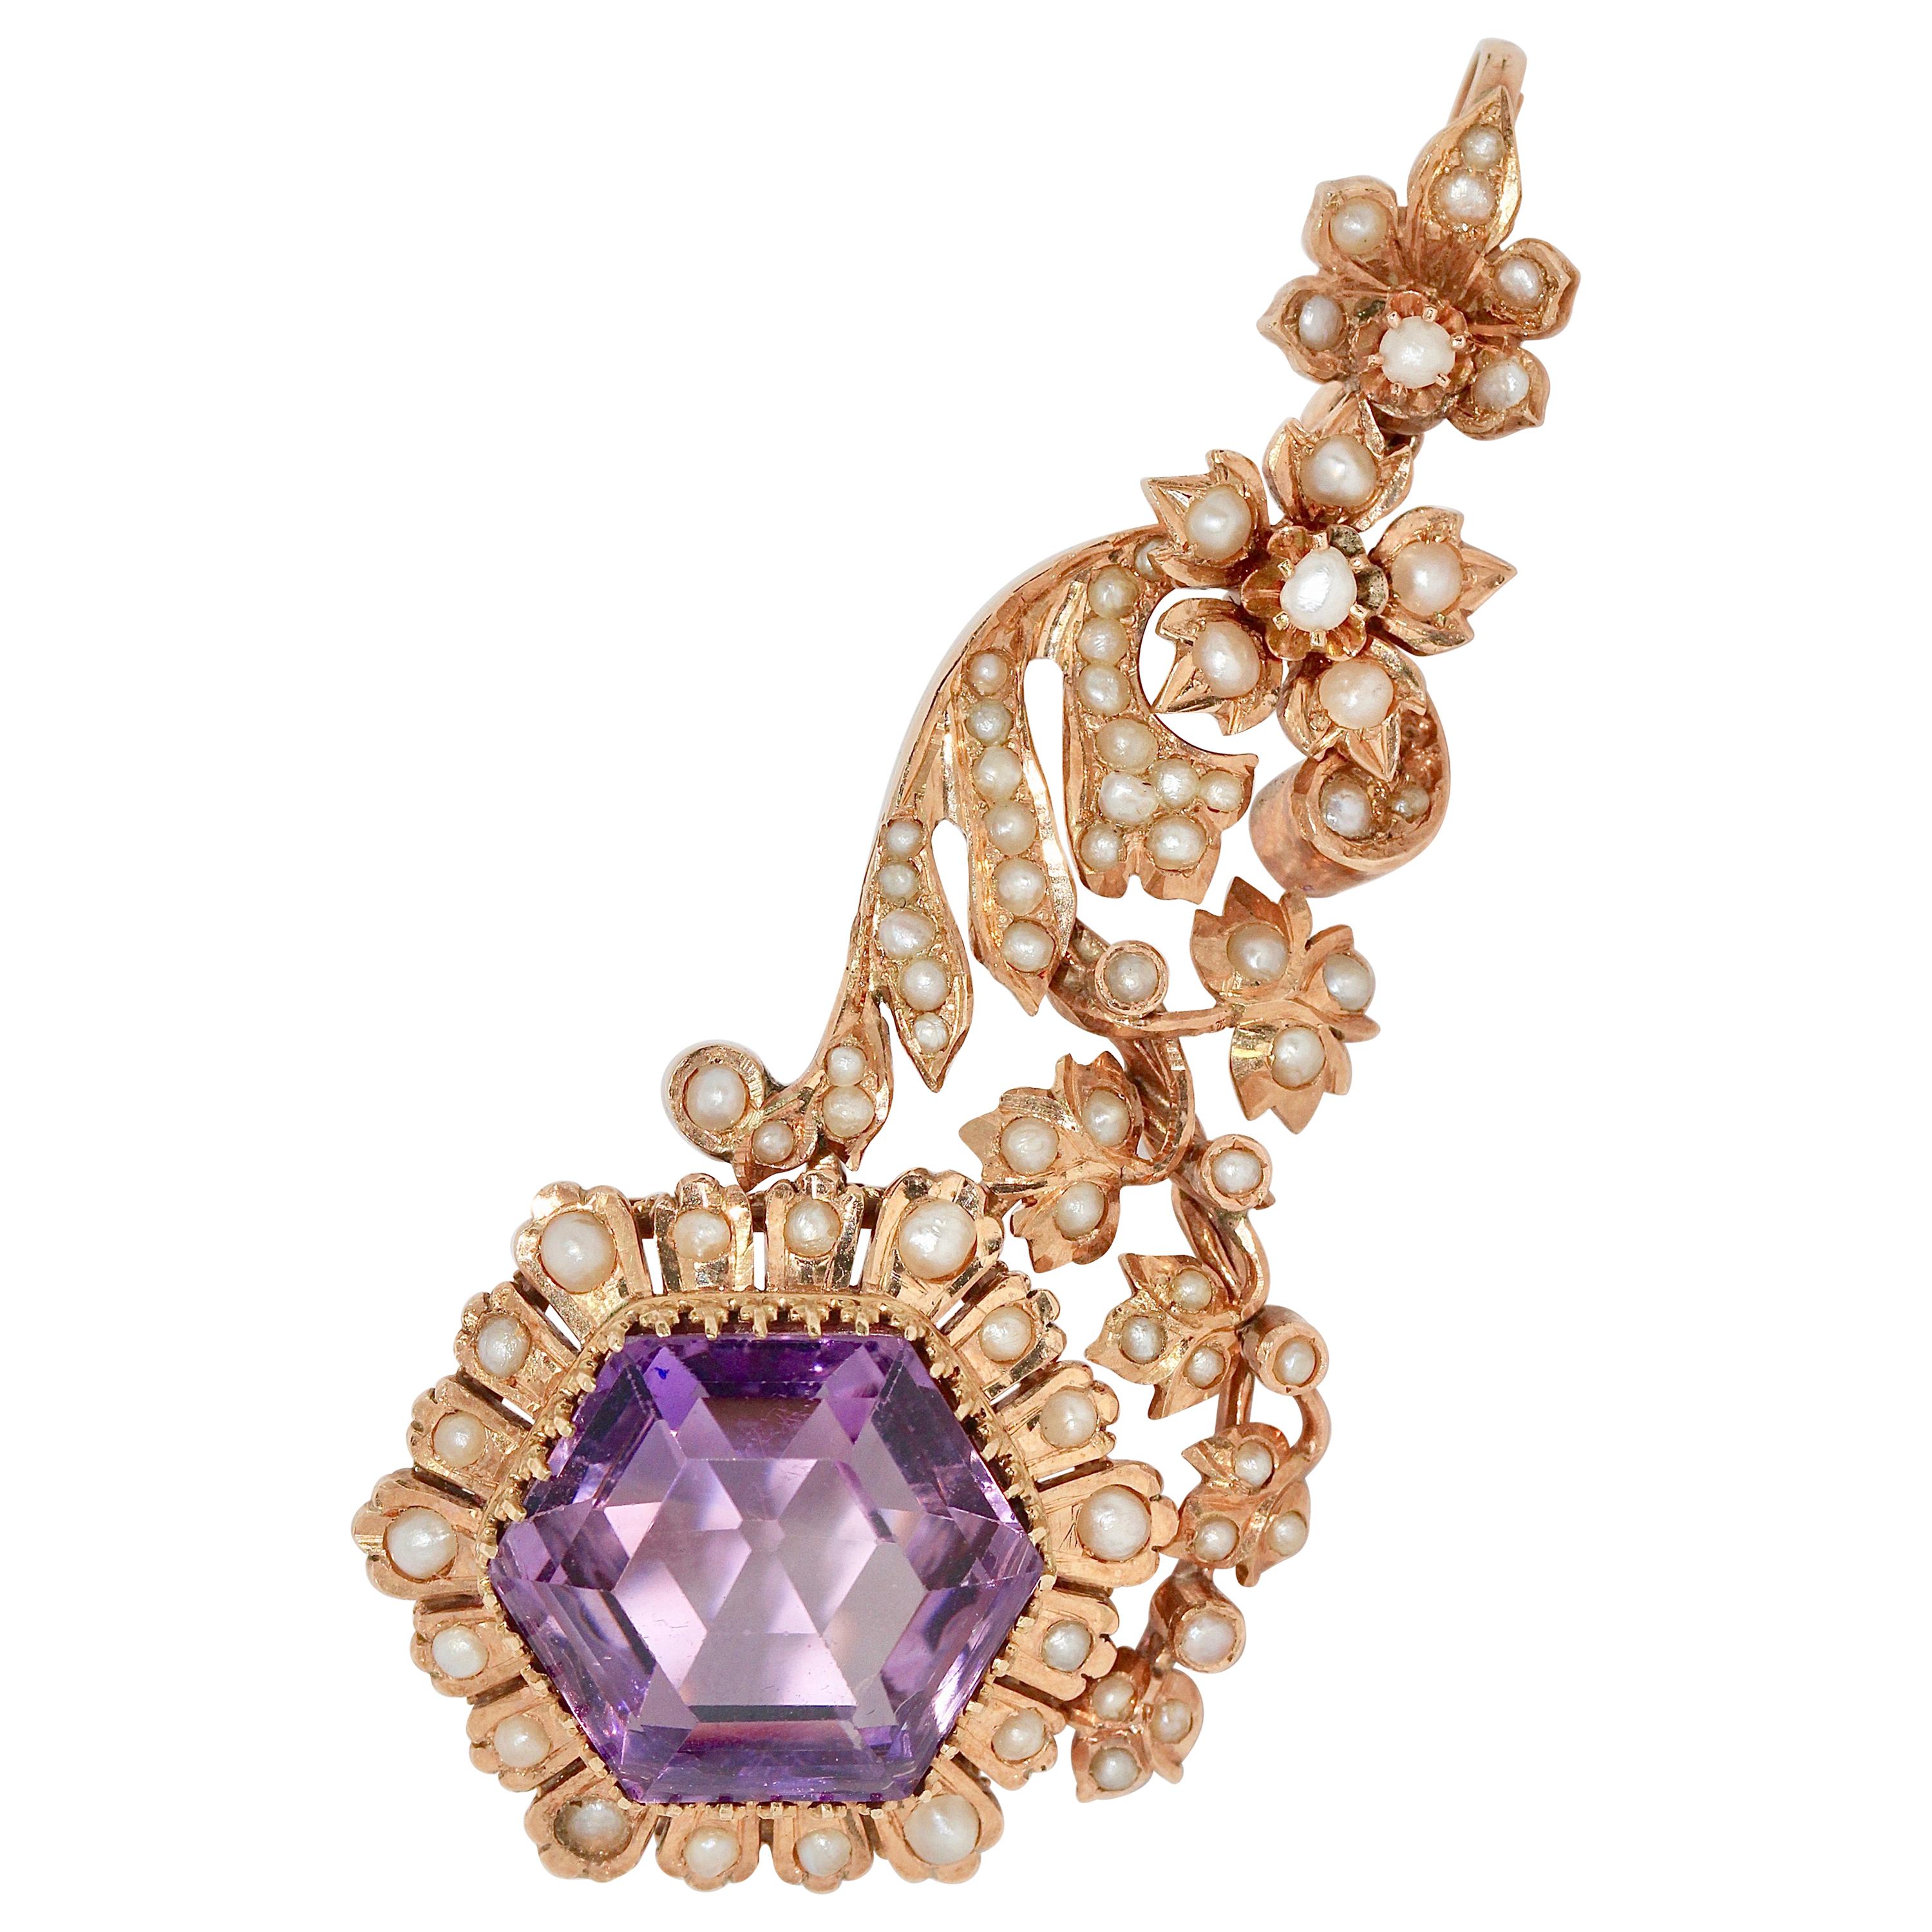 Rehausseur d'améthyste de style victorien ancien, pendentif avec perles naturelles et or rose